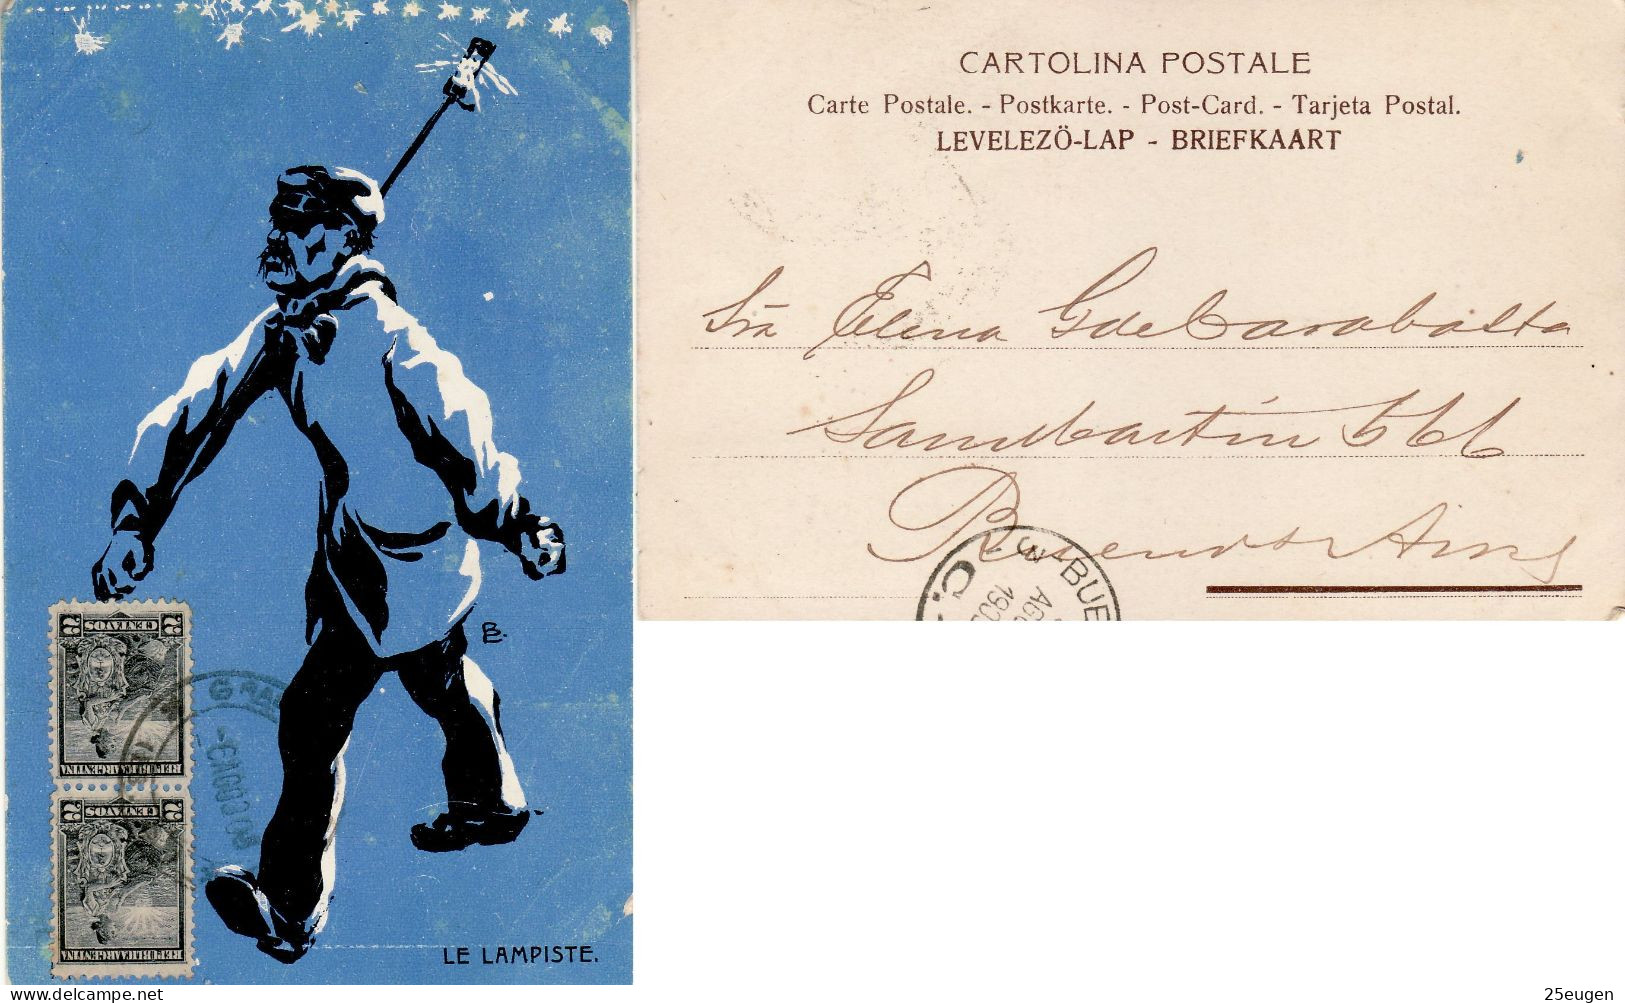 ARGENTINA 1903 POSTCARD SENT TO BUENOS AIRES - Briefe U. Dokumente